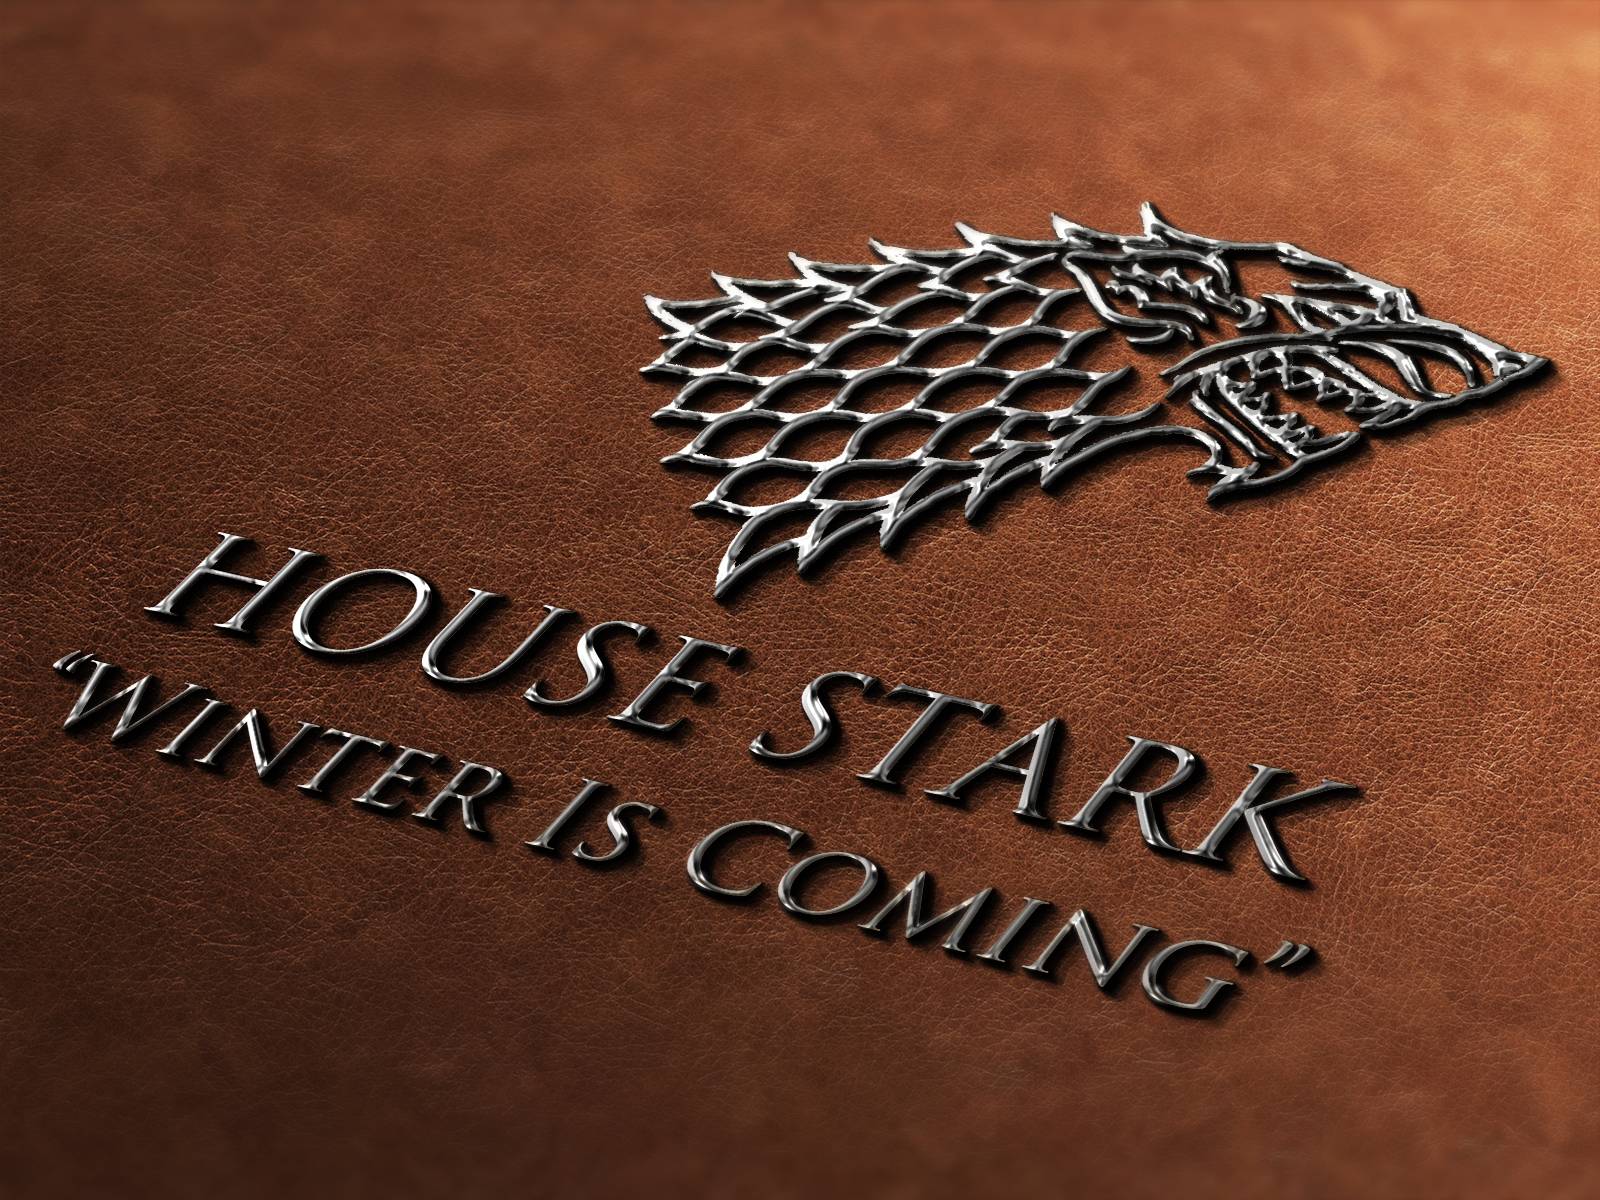 House Stark wallpaper. House Stark